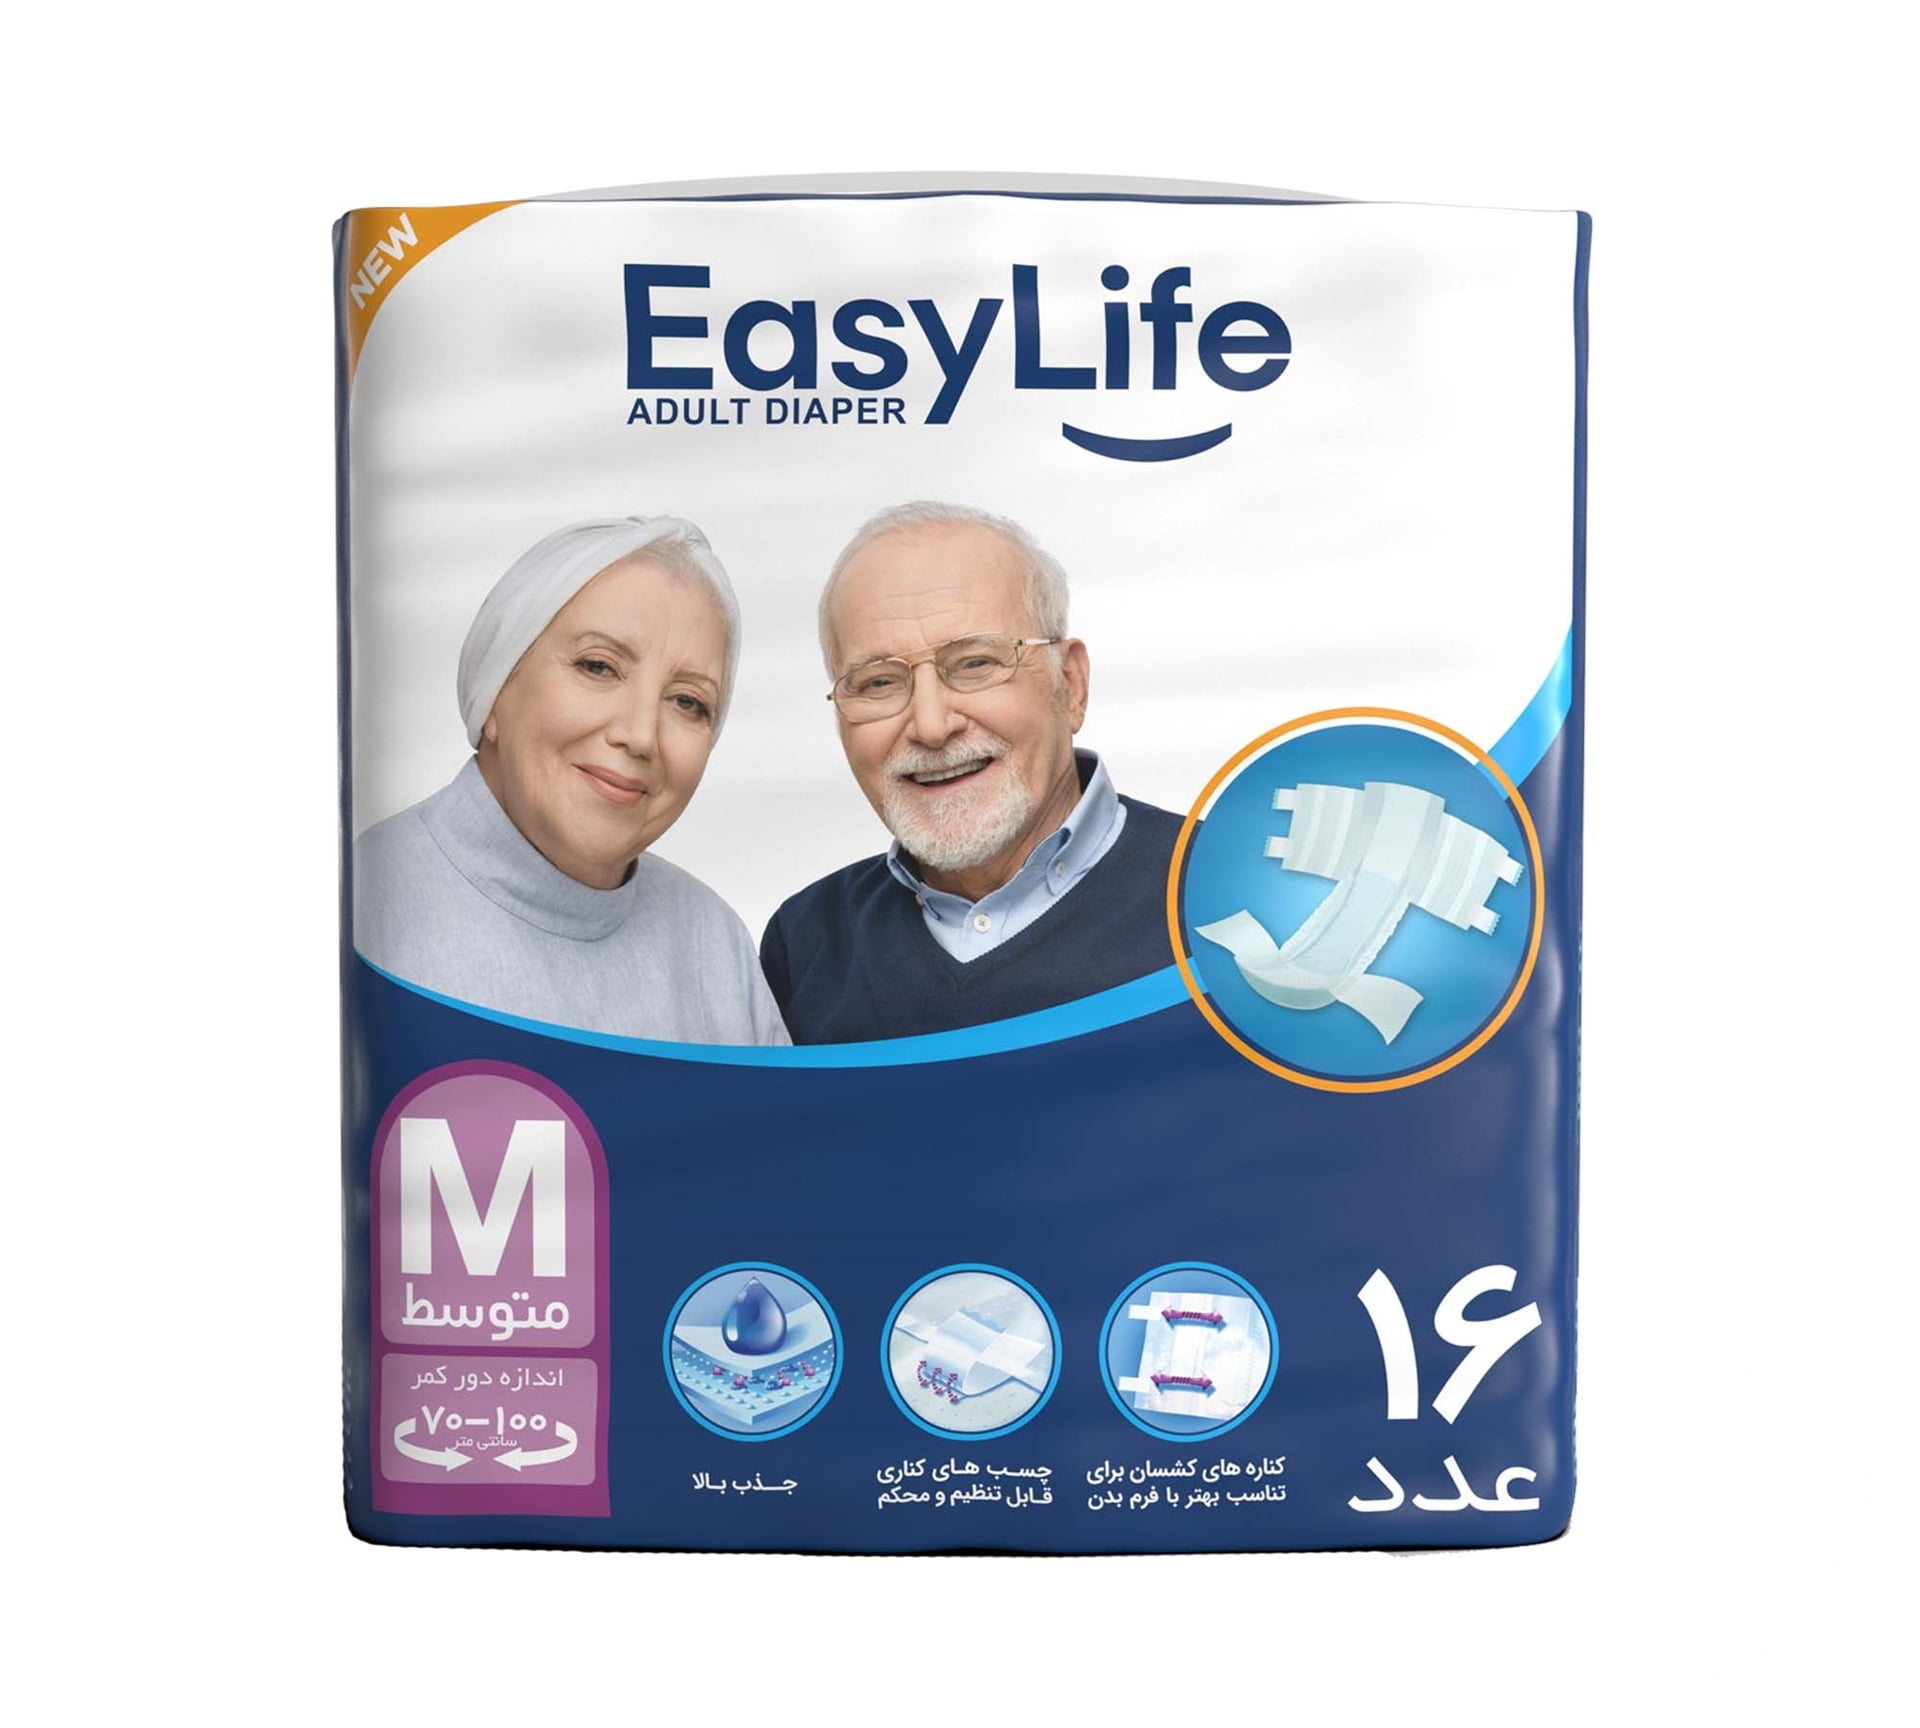 پوشینه بزرگسال ایزی لایف سایز متوسط بسته 16 عددی Easy Life Medium Adult Protective Diaper 16 pcs